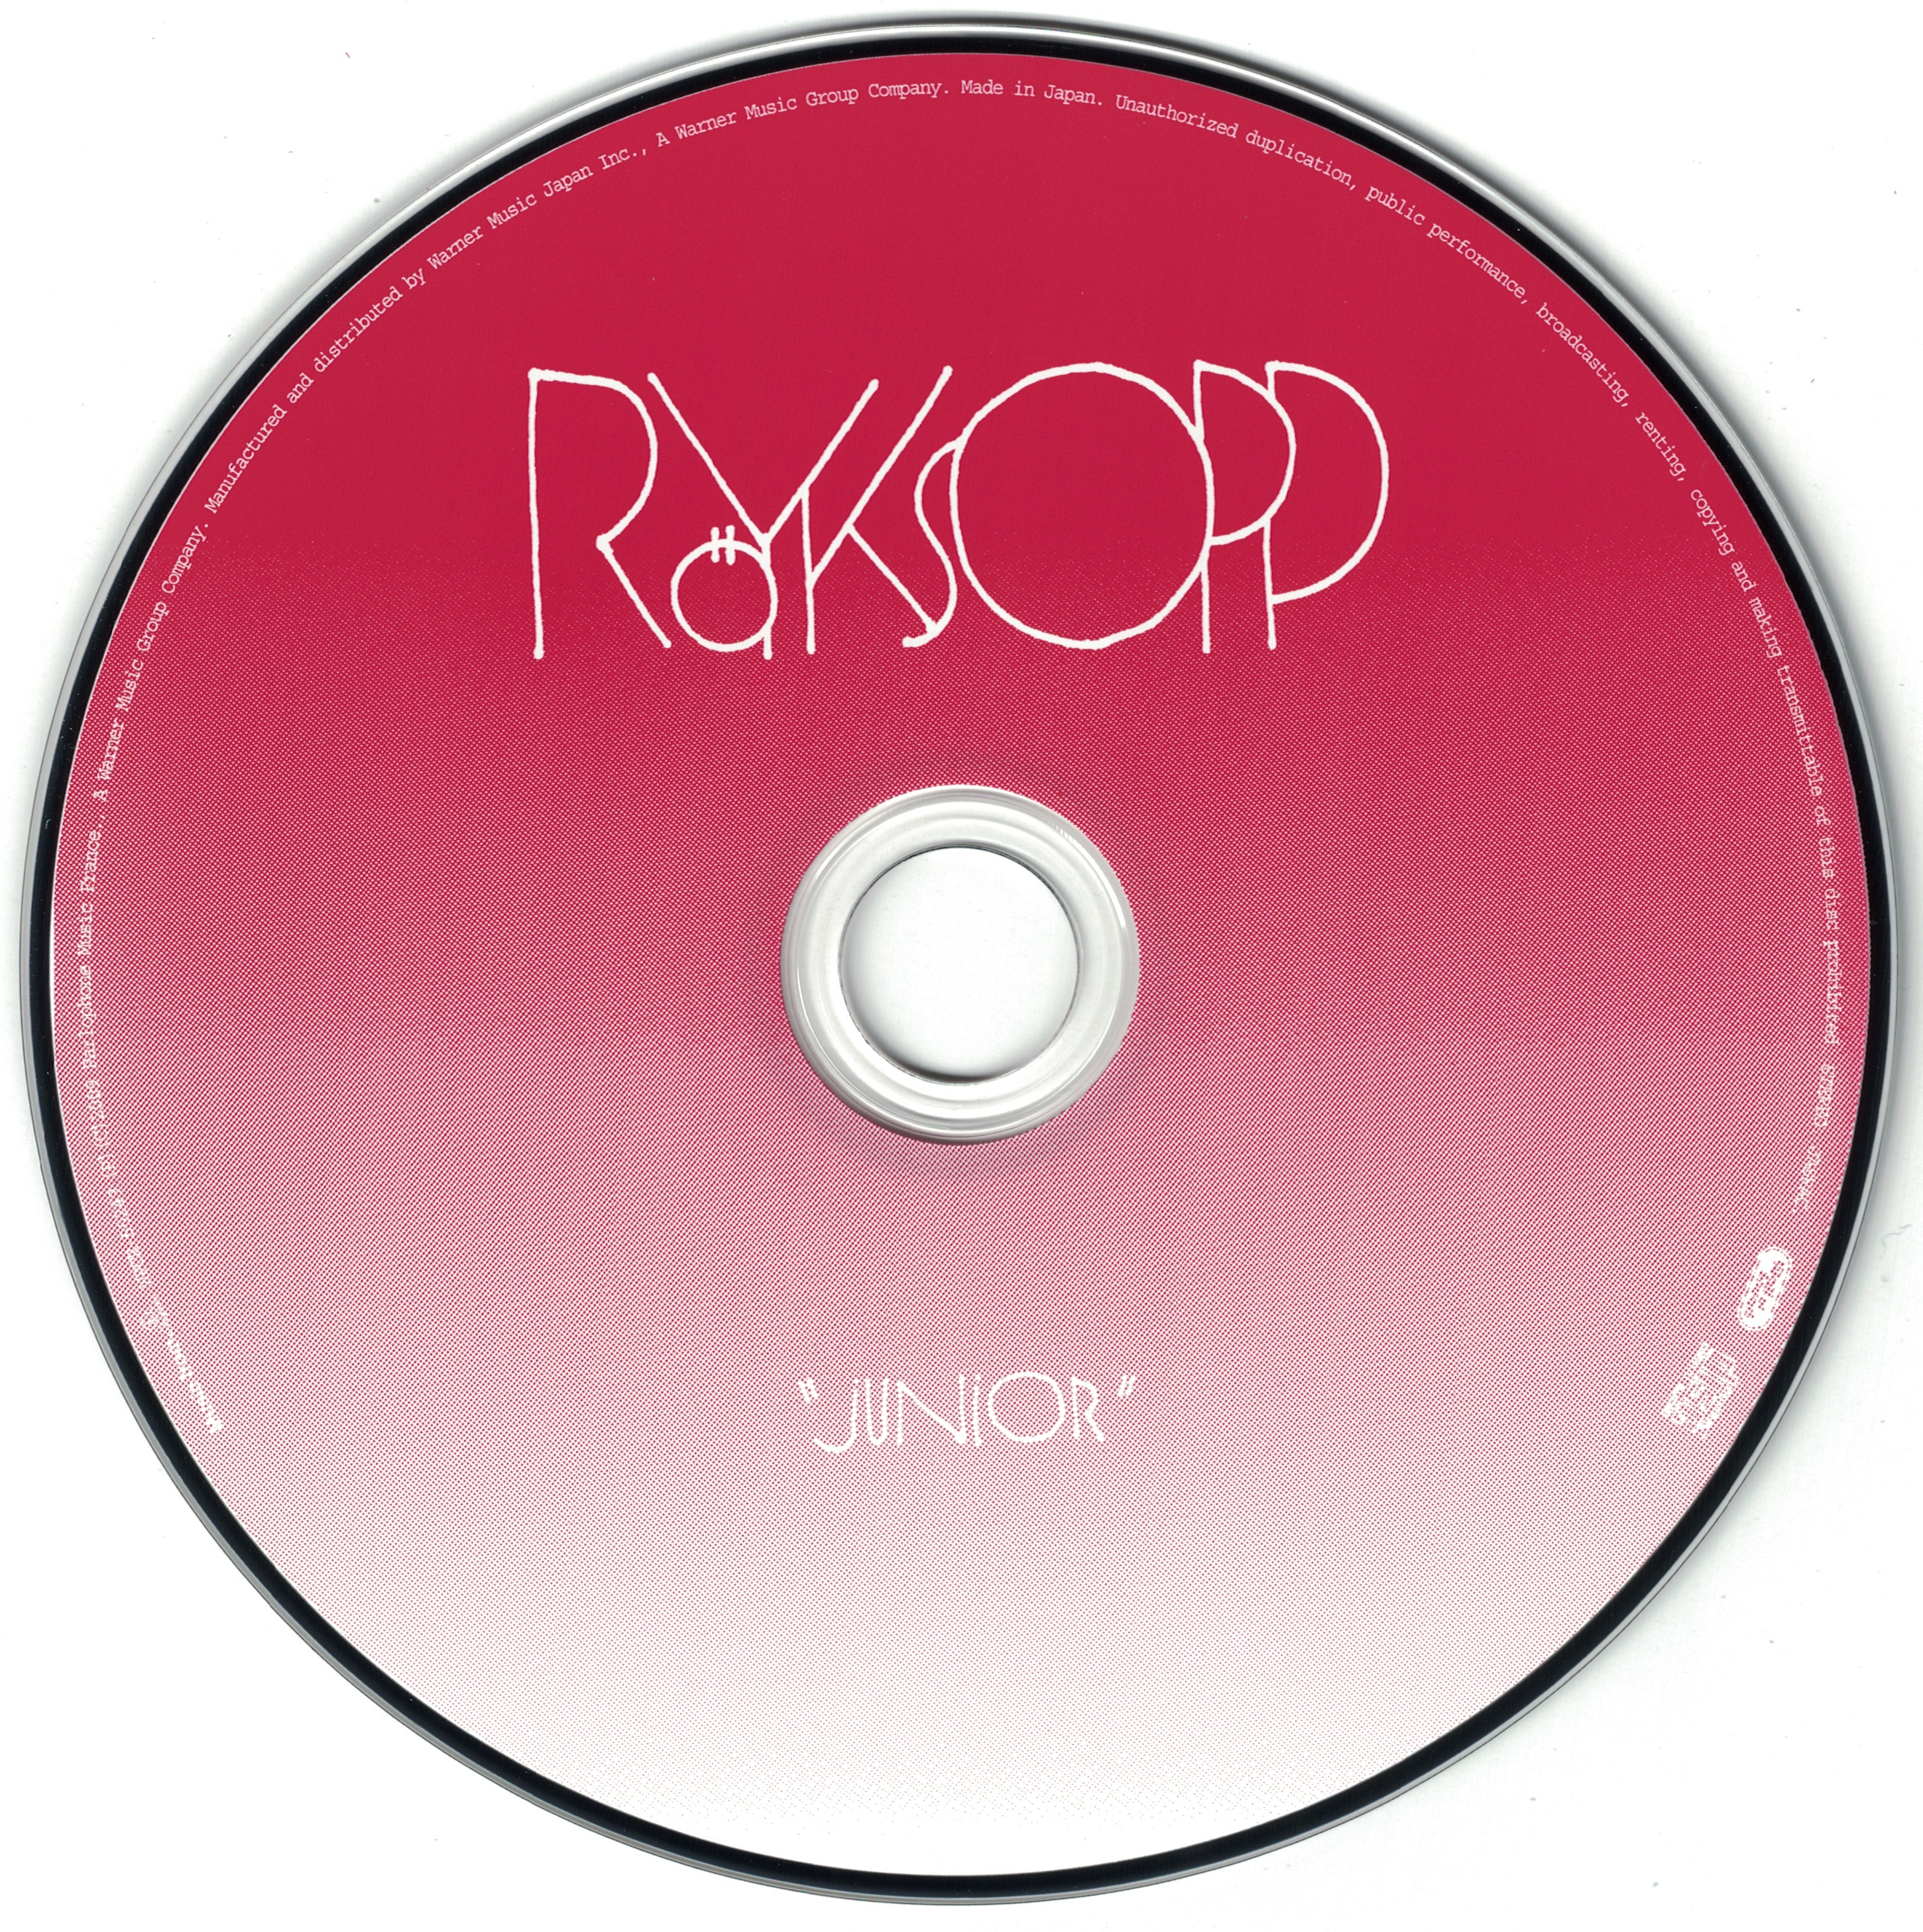 Ryksopp - Junior Japan - cd.jpg